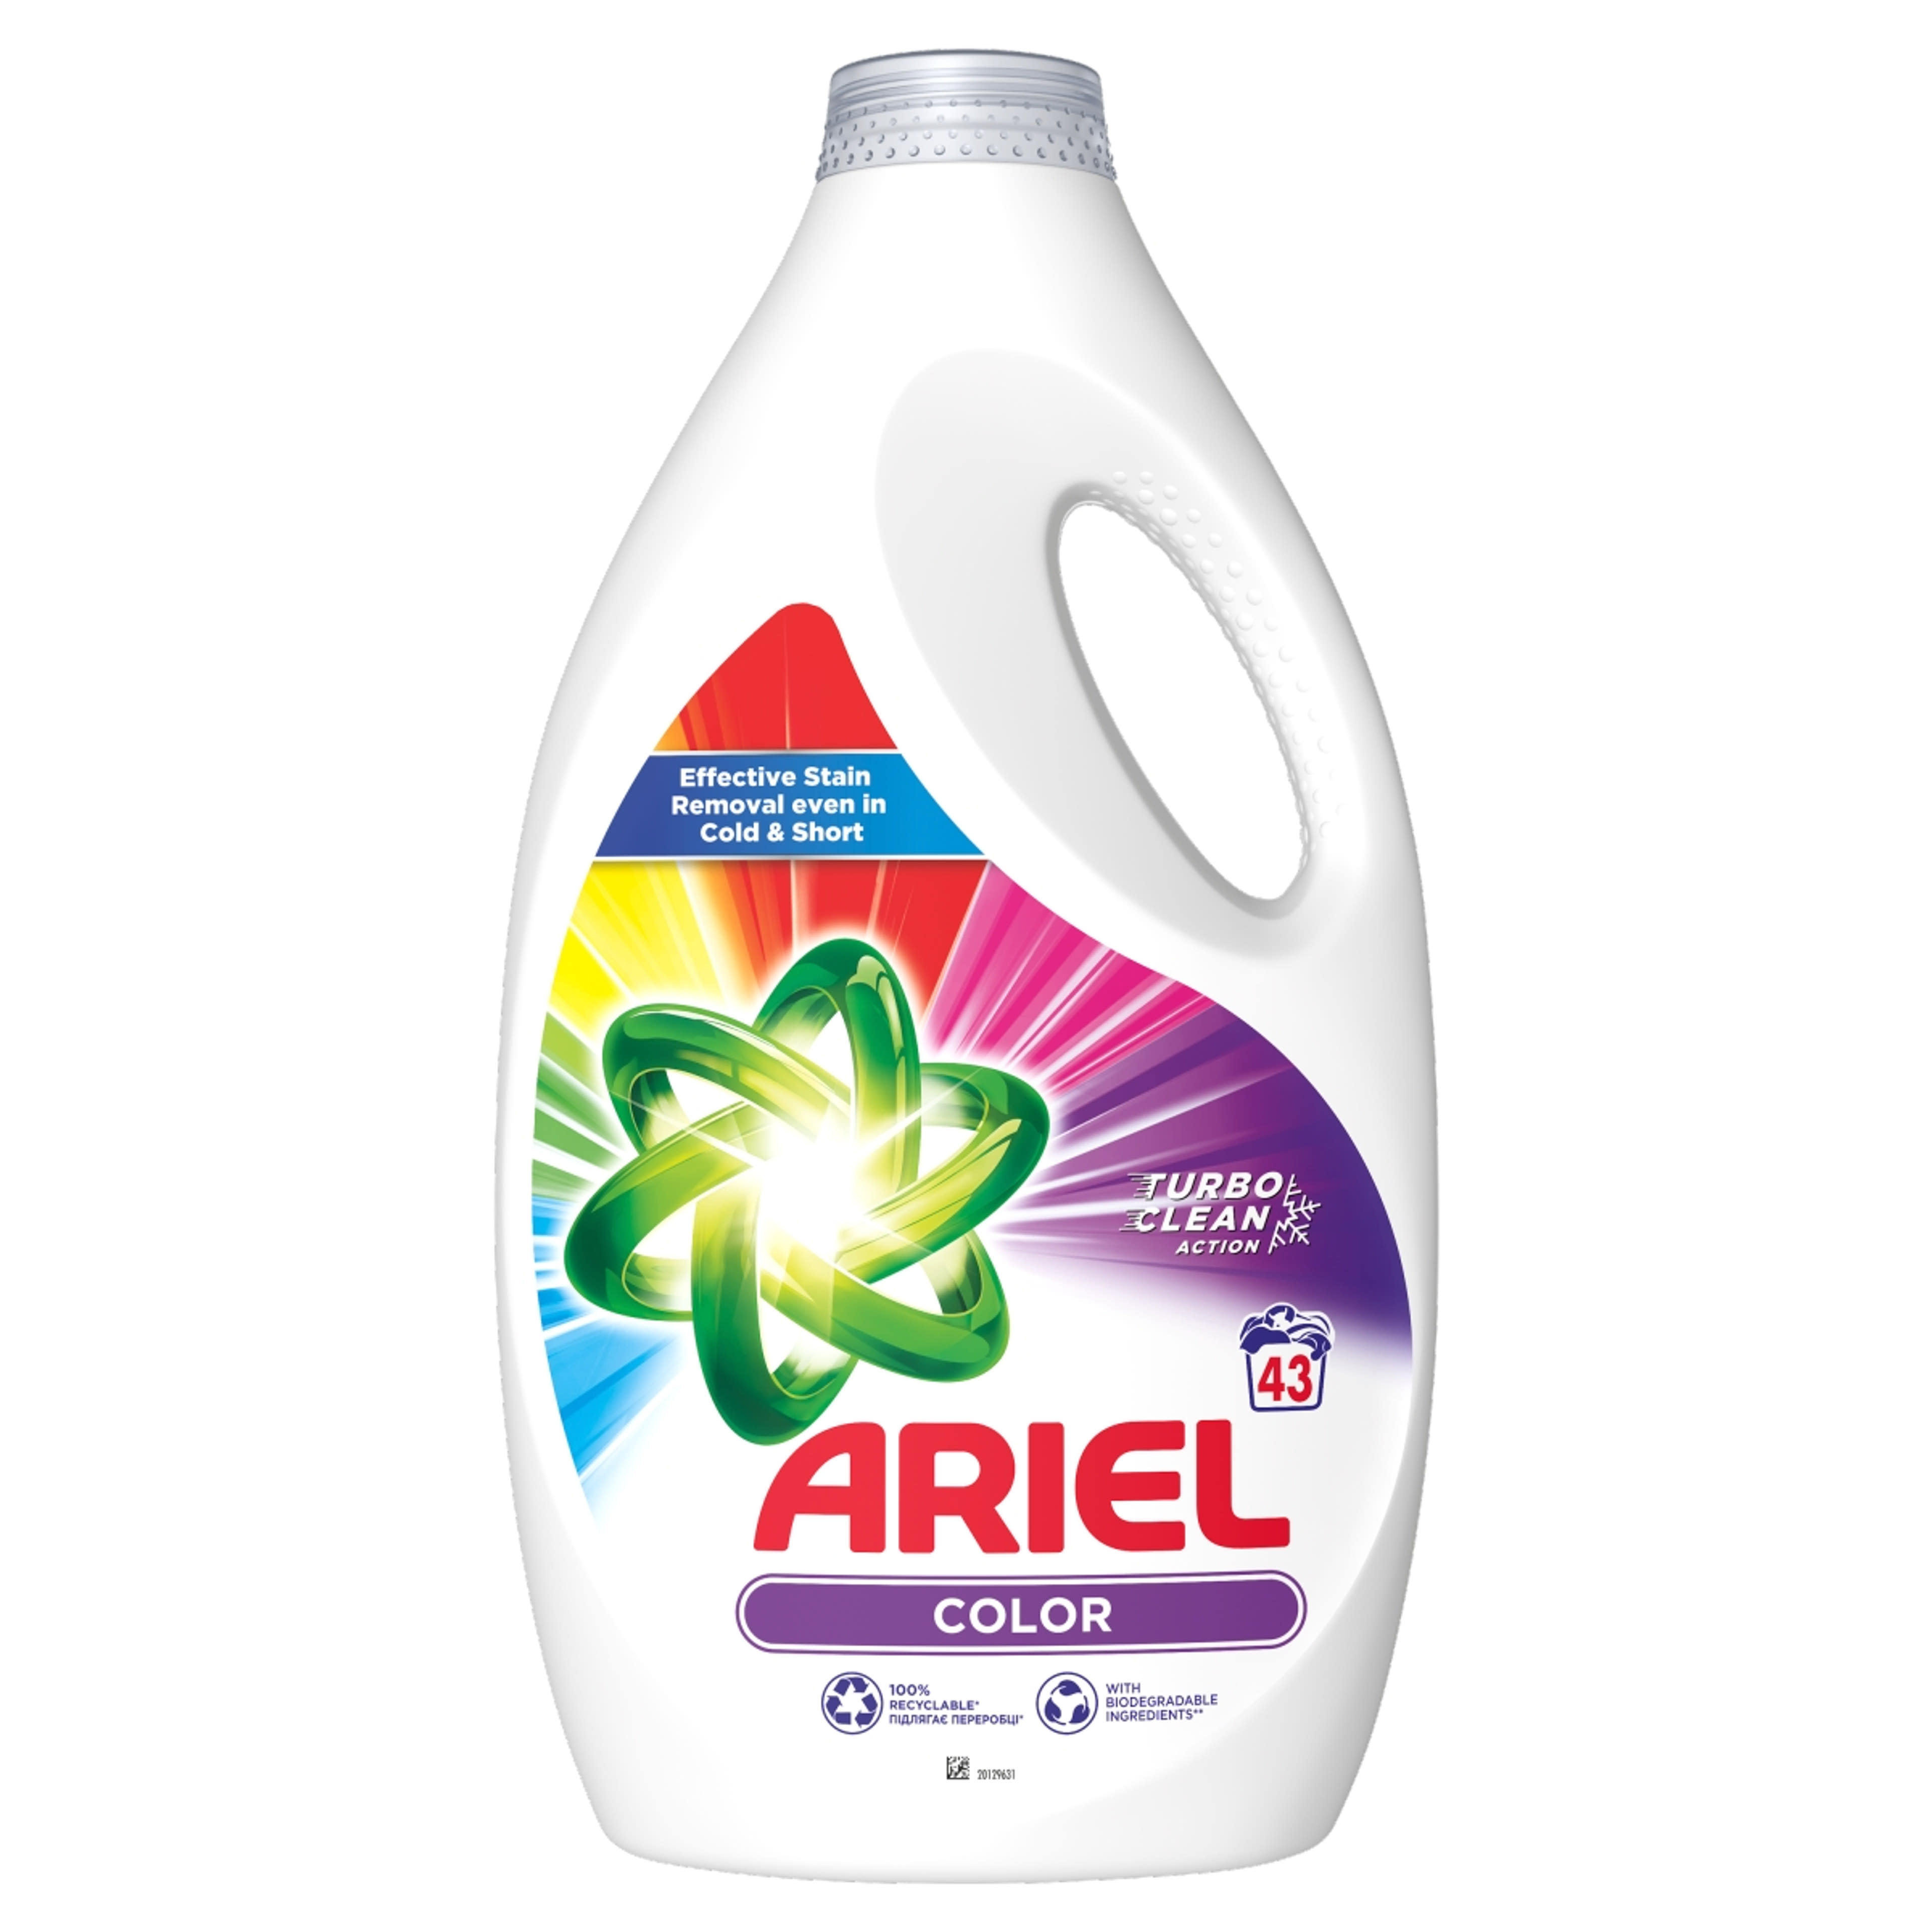 Ariel Color Clean & Fresh folyékony mosószer, 43 mosáshoz - 2150 ml